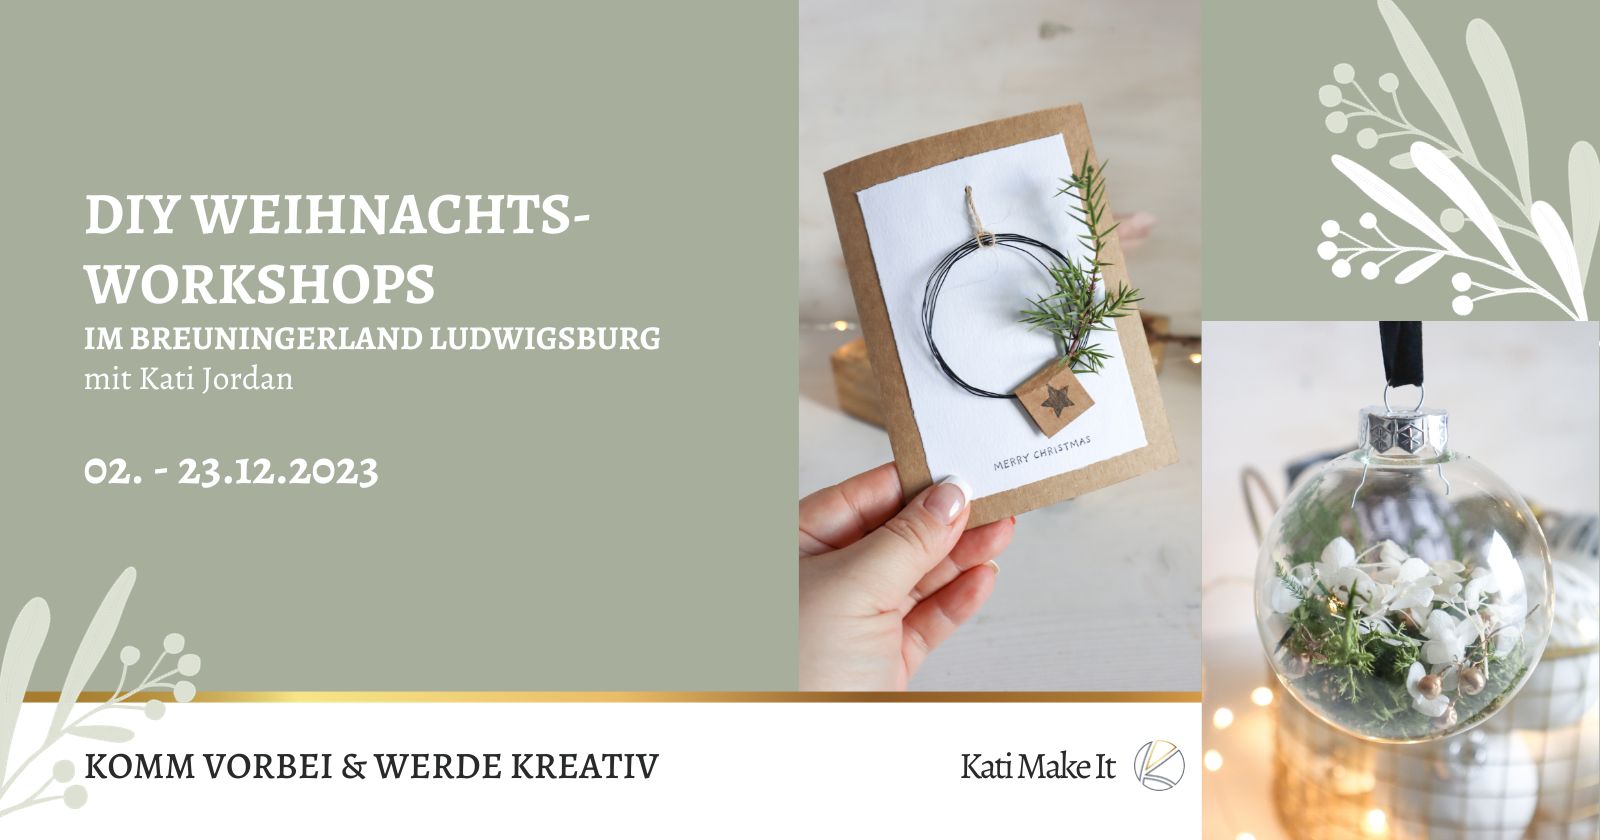 Erlebe festliche Kreativität im Breuningerland Ludwigsburg: Kostenlose DIY-Workshops mit Kati Make It 02. - 23.12.2023! Komm vorbei und lass dich inspirieren.